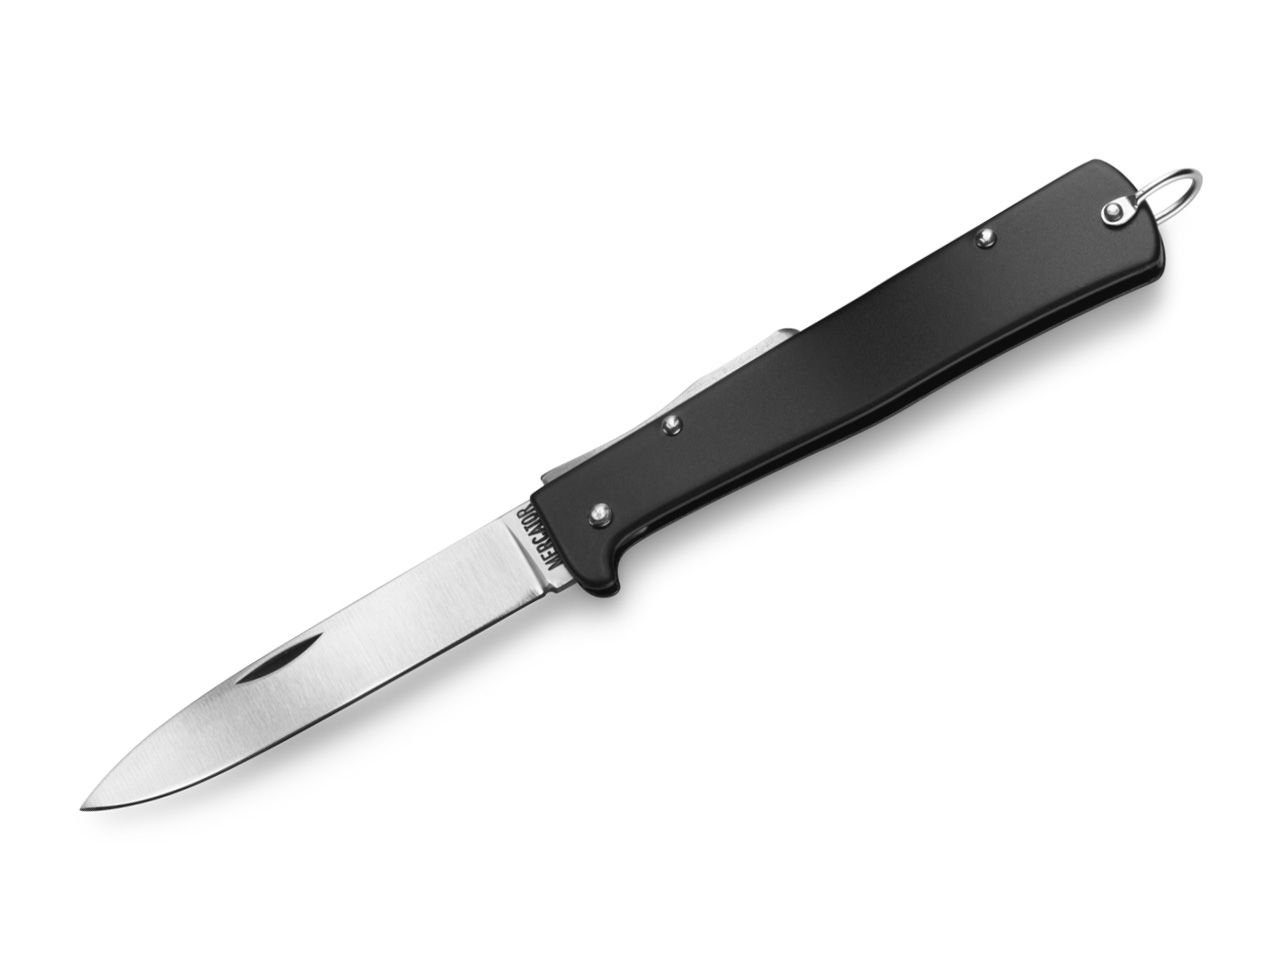 Otter Messer Taschenmesser Mercator-Messer groß schwarz mit Clip, Klinge Carbonstahl, Backlock